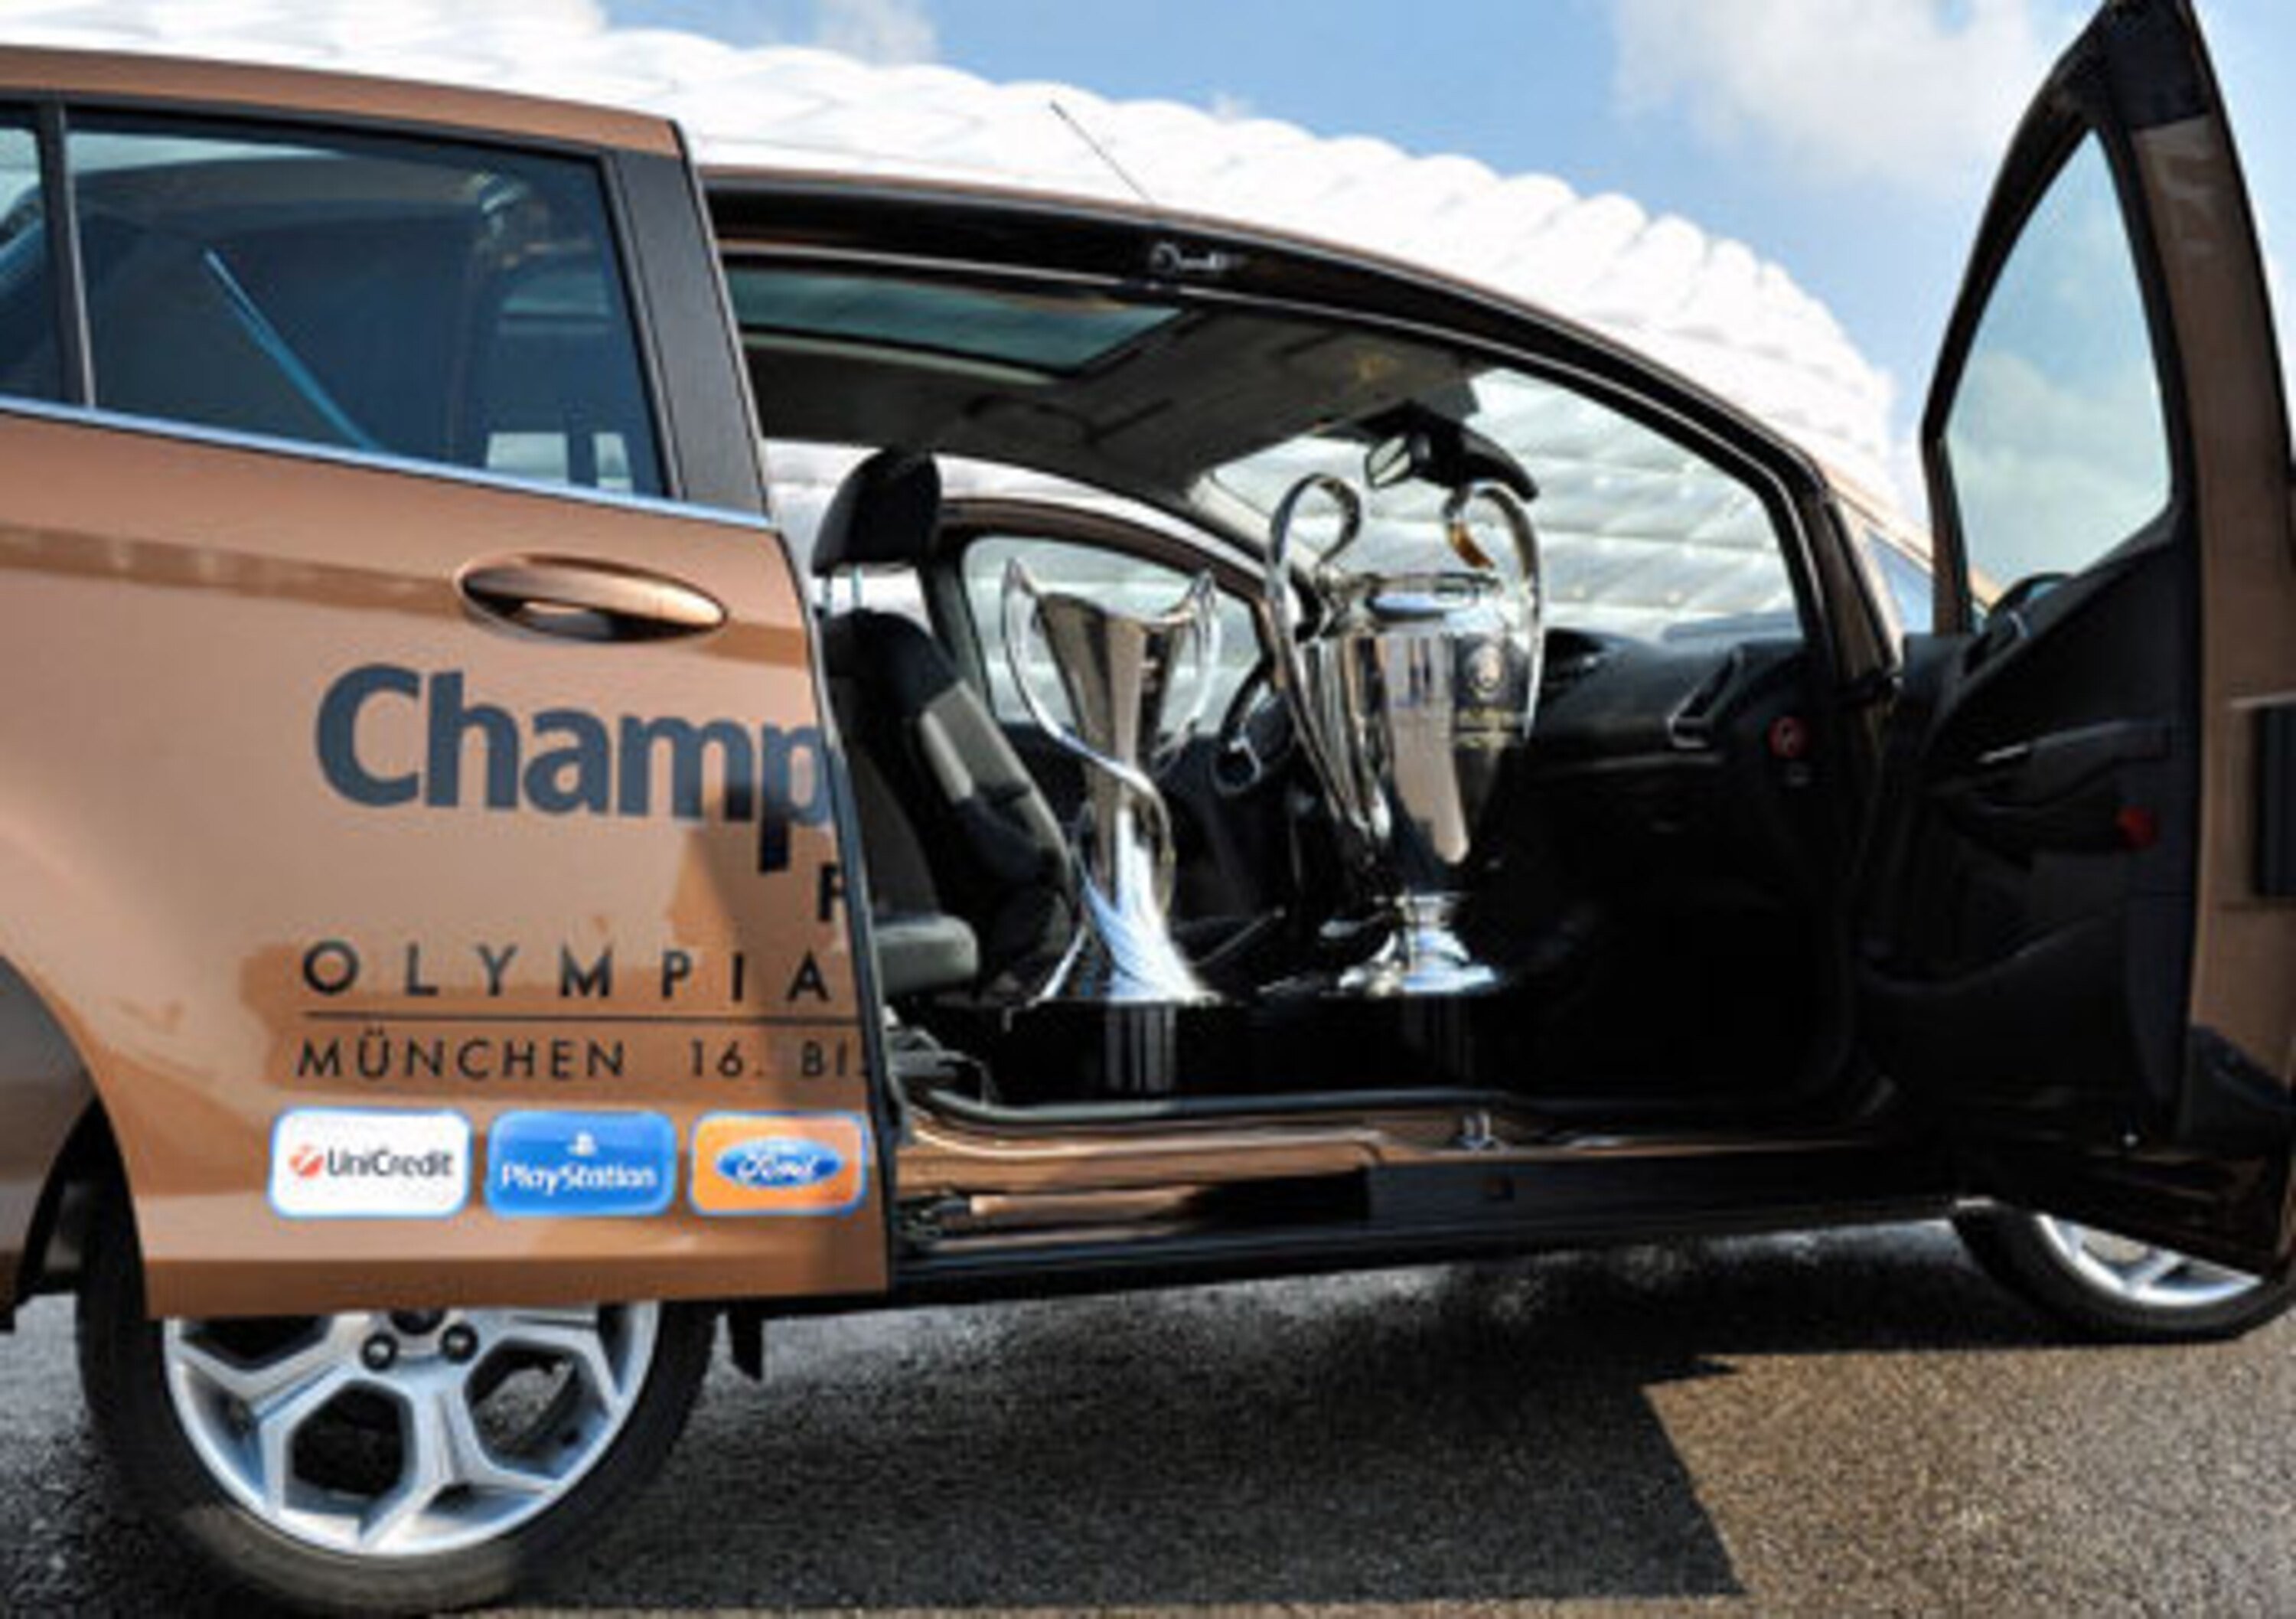 Ford celebra 20 anni di Champions League con la B-MAX